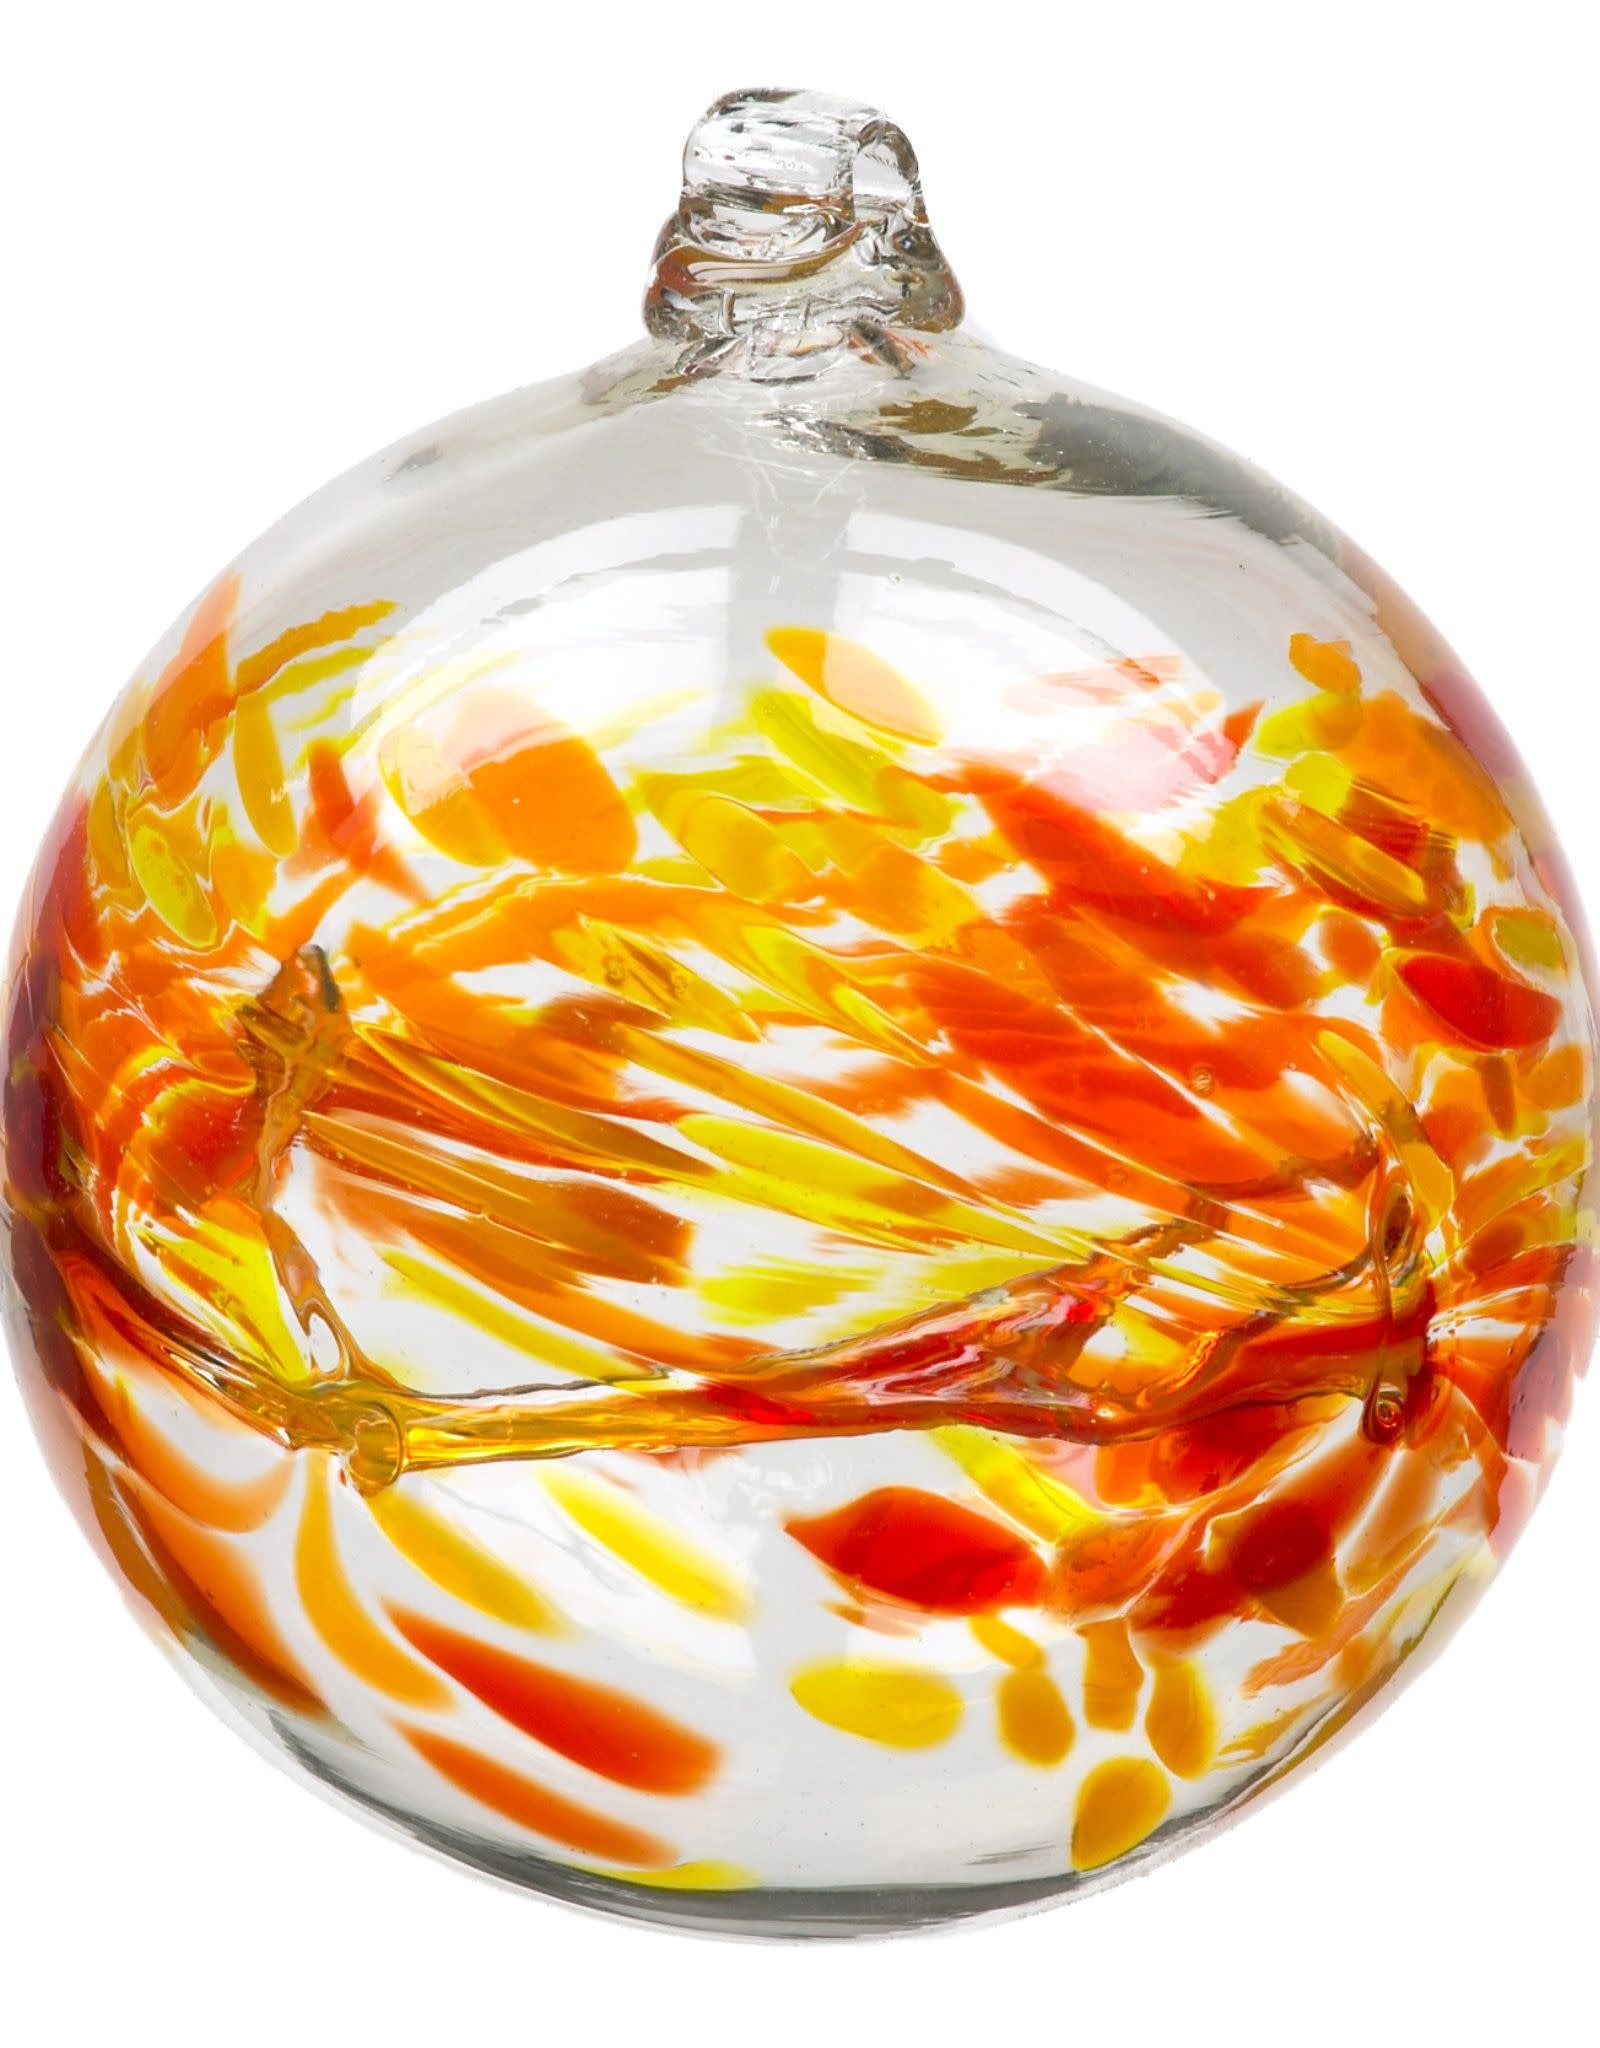 Kitras Art Glass Birthday Wish Ball January 2” Kitras